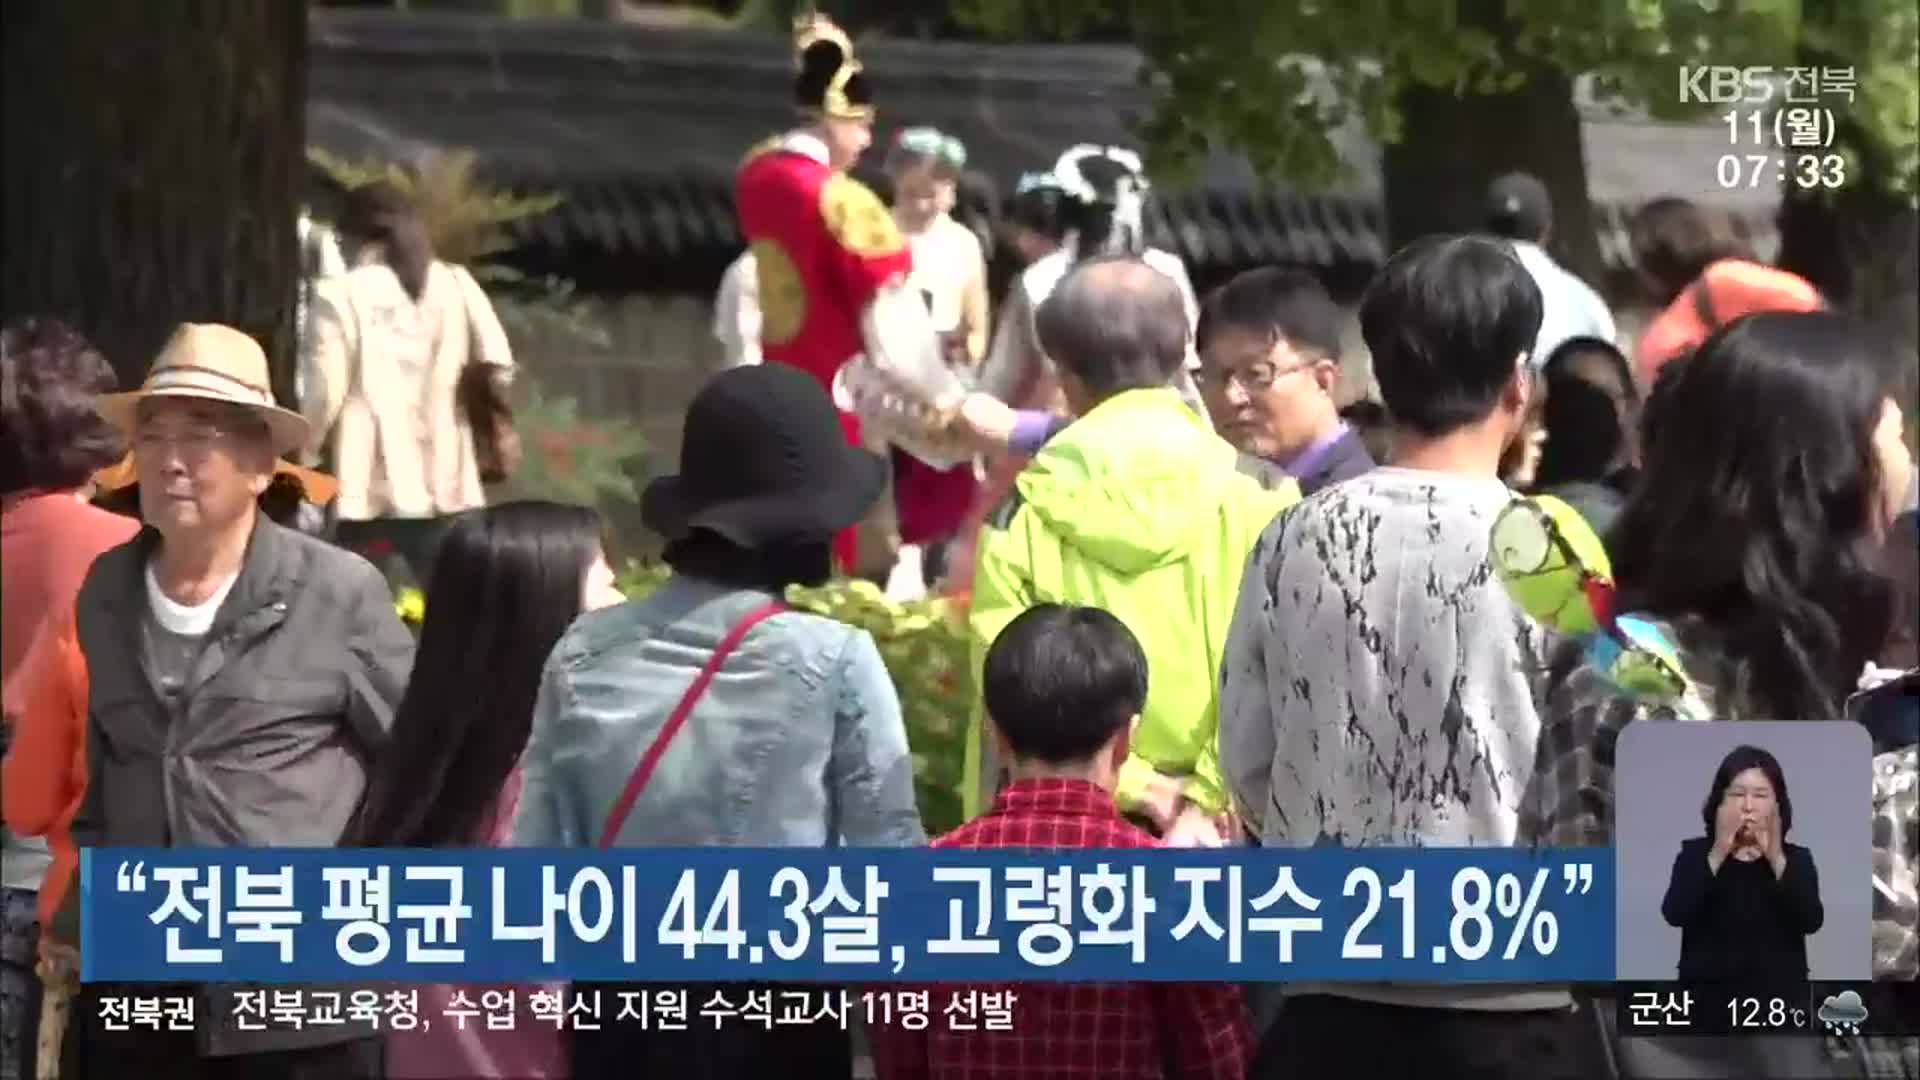 “전북 평균 나이 44.3살, 고령화 지수 21.8%”